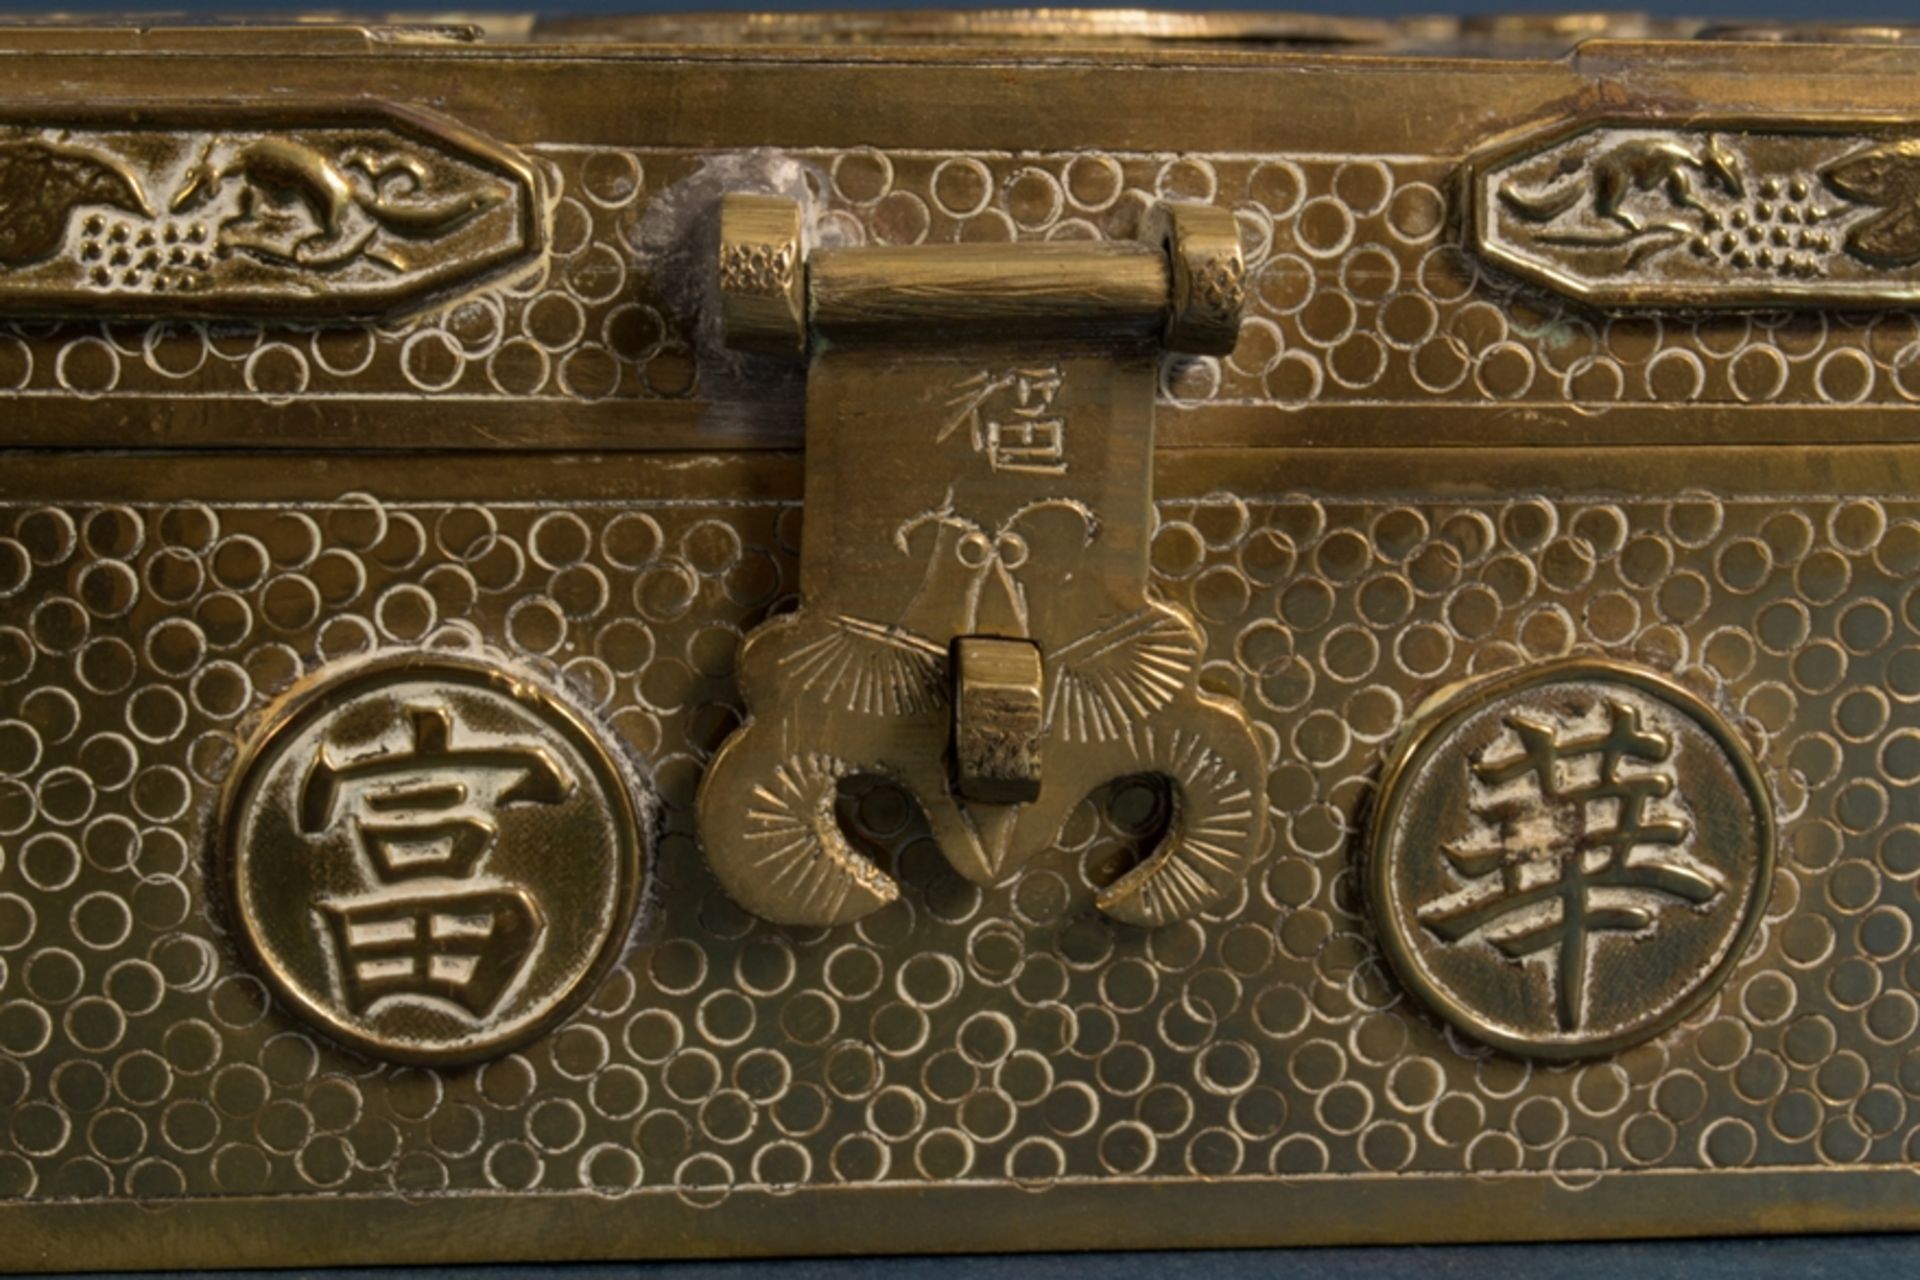 Quadratische Deckeldose, Messing, Made in China wohl Mitte 20. Jhd., scharnierter Deckel. Ca. 6 x 16 - Bild 4 aus 11